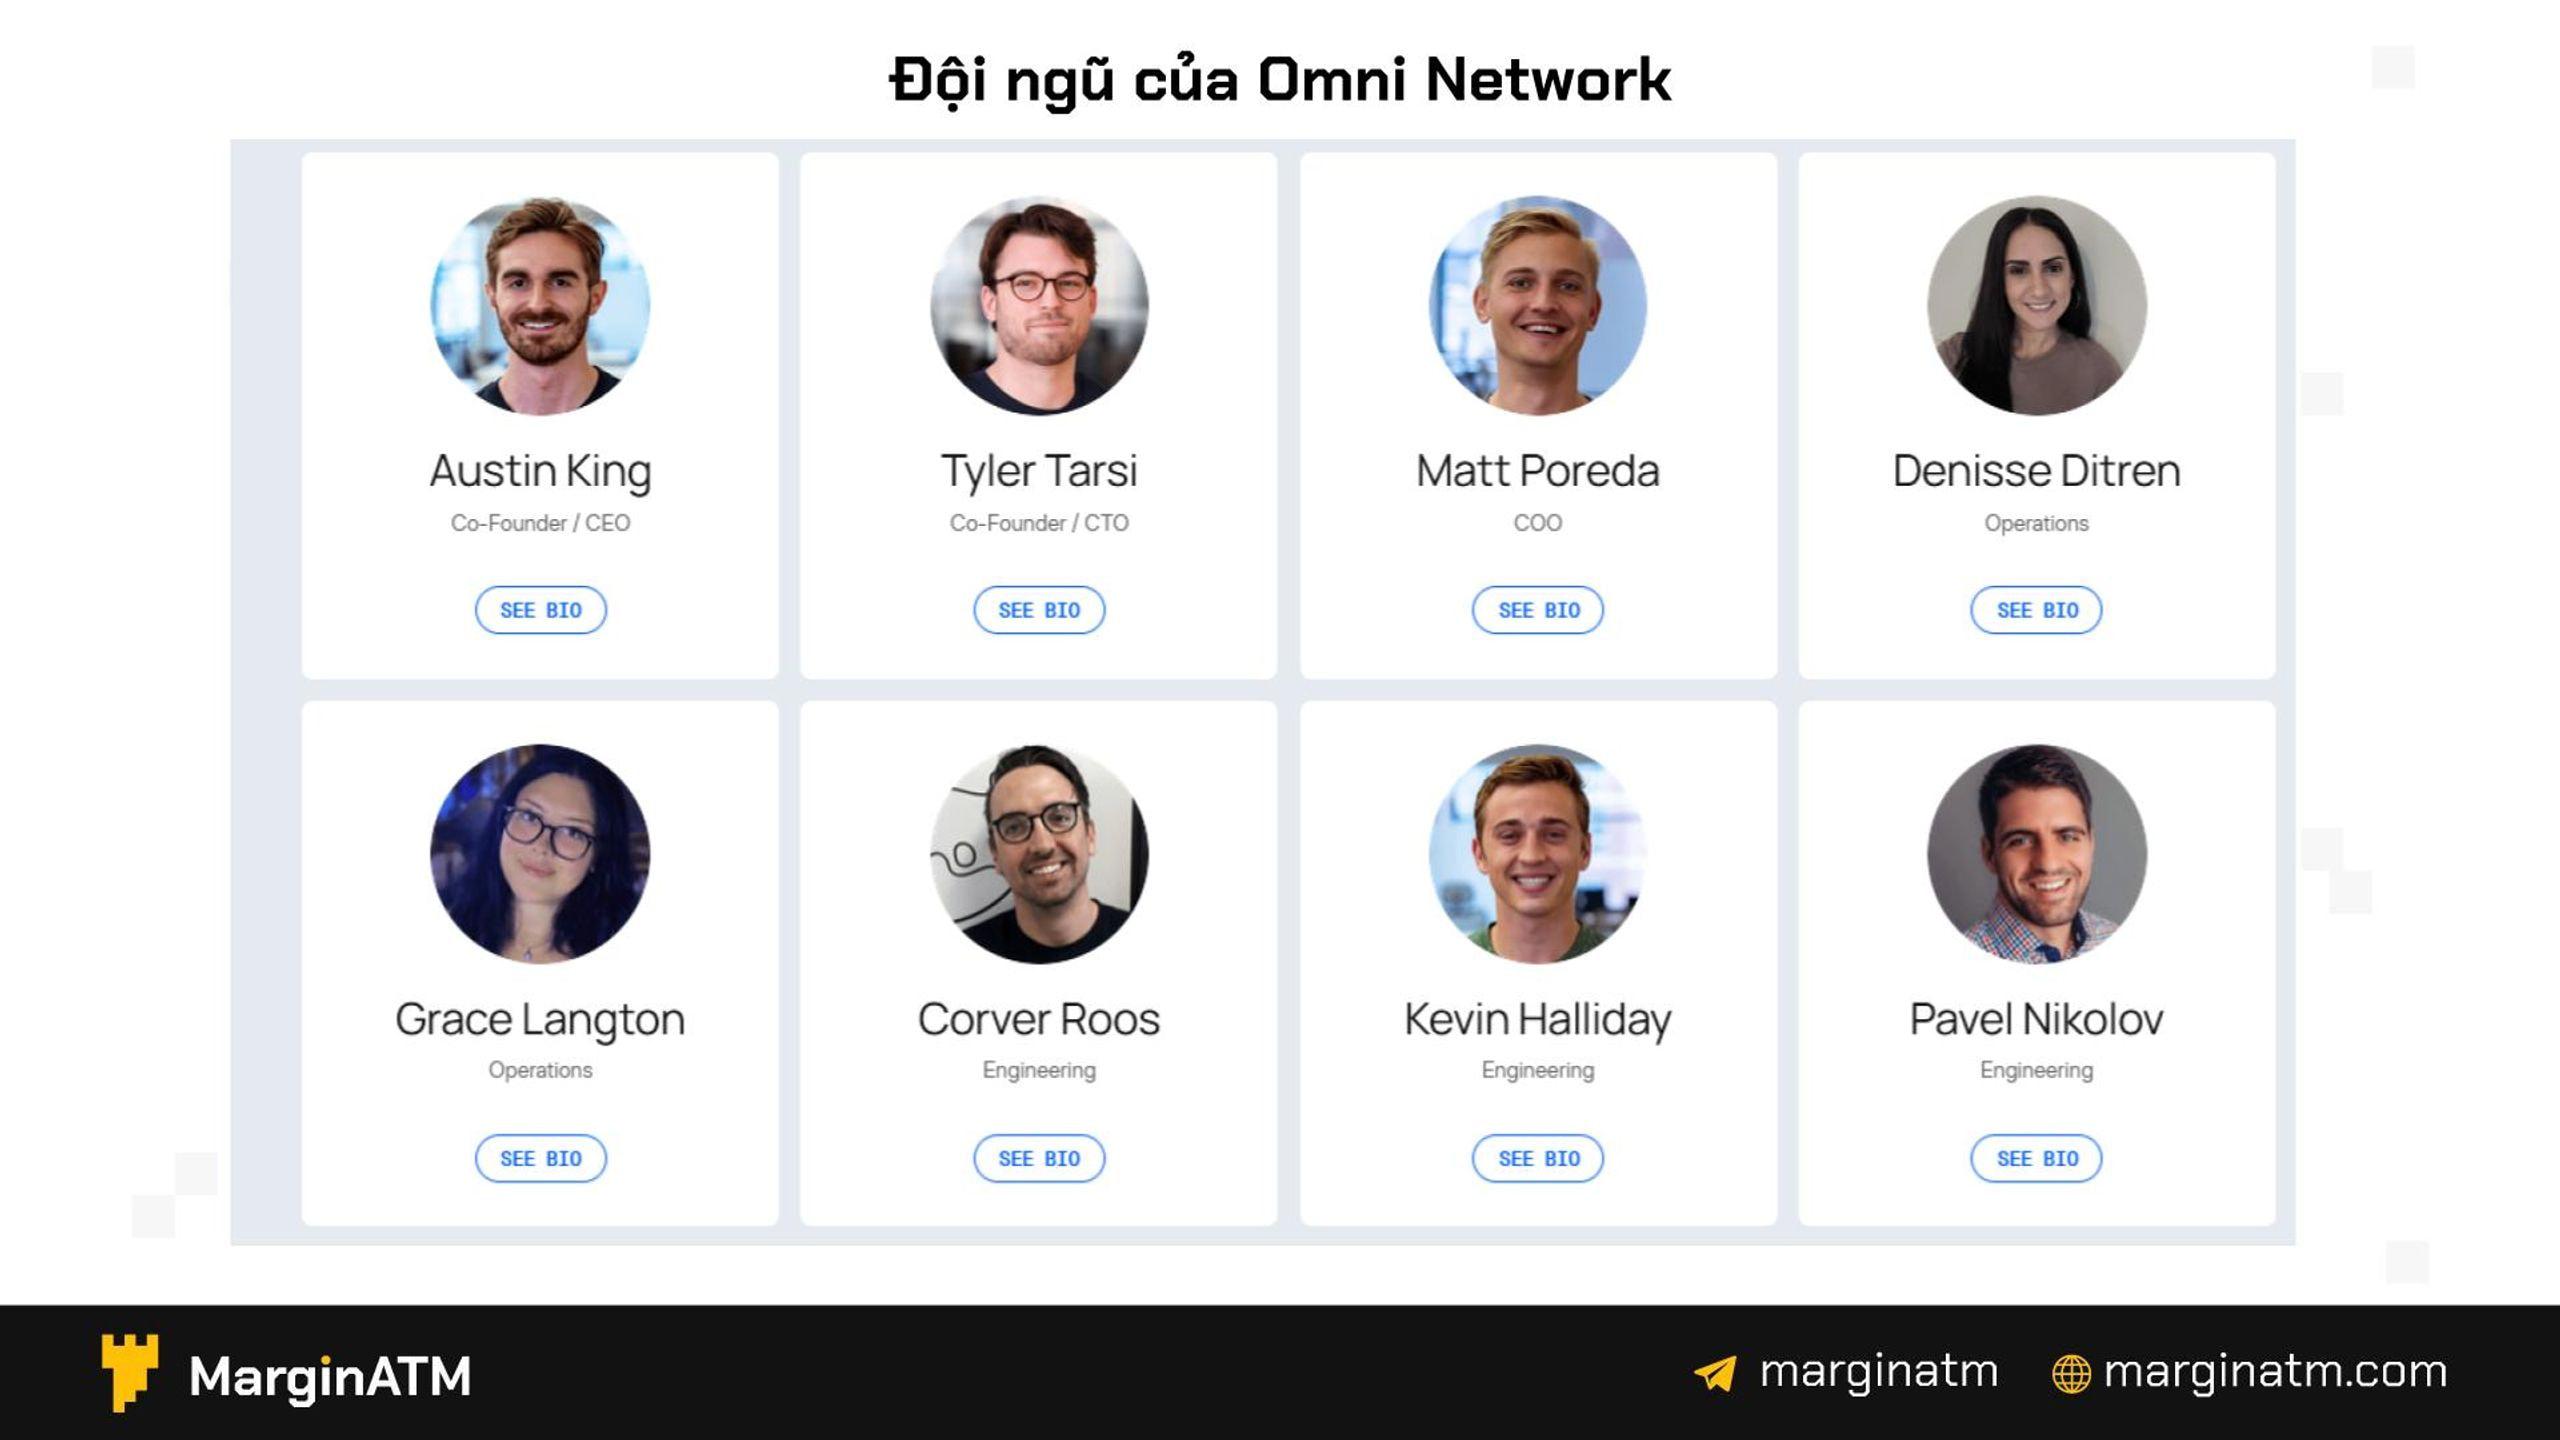 đội ngũ omni network